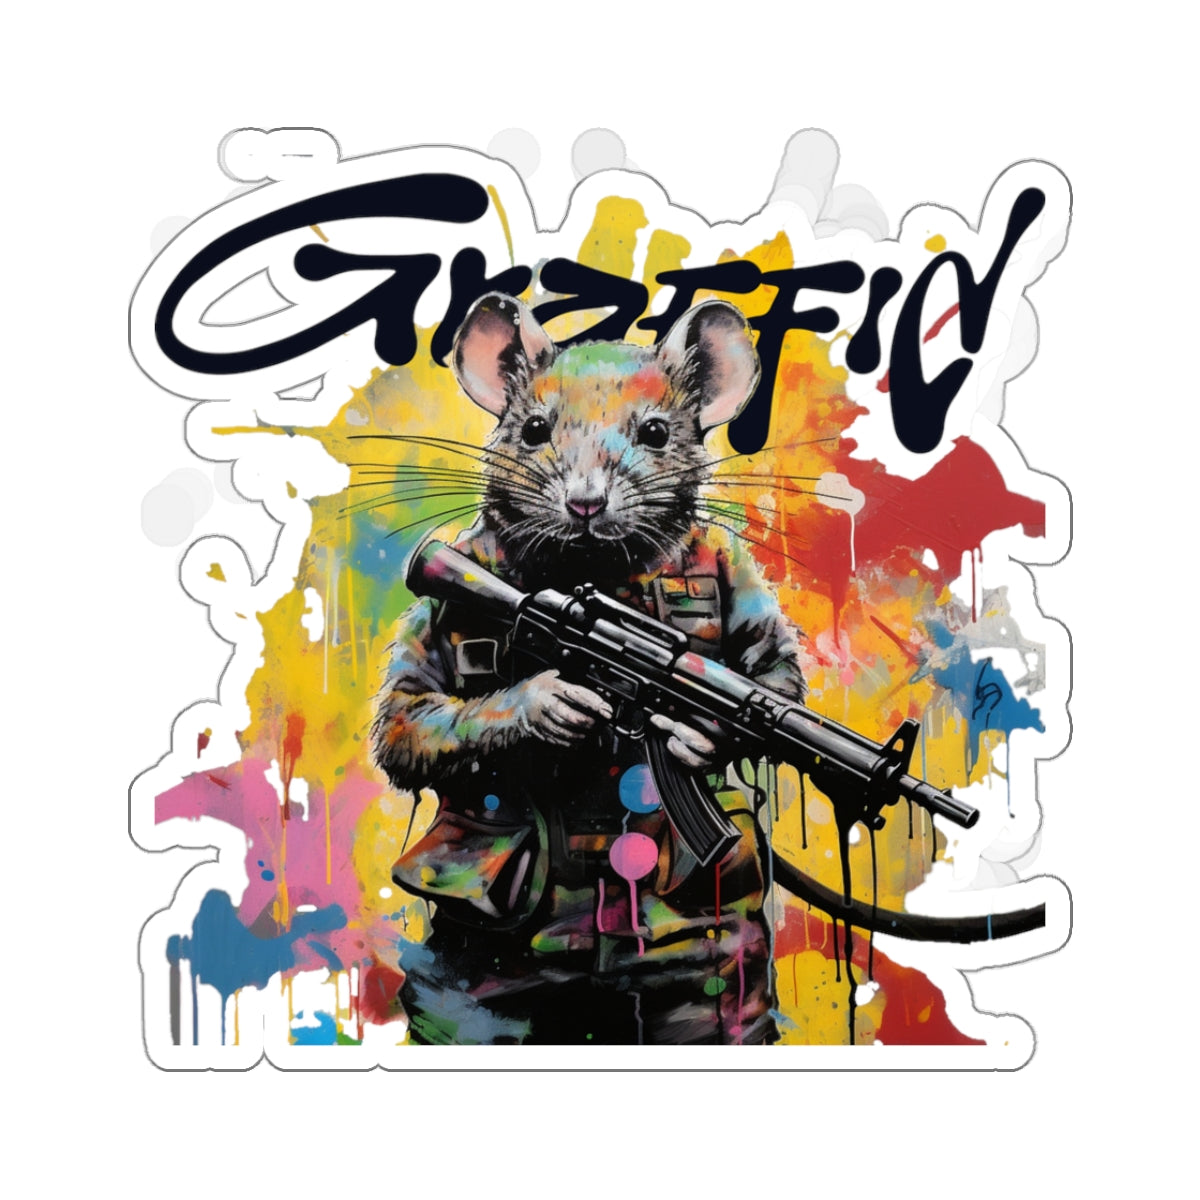 Graffid Stickers: 'Make Art Not War' Edition